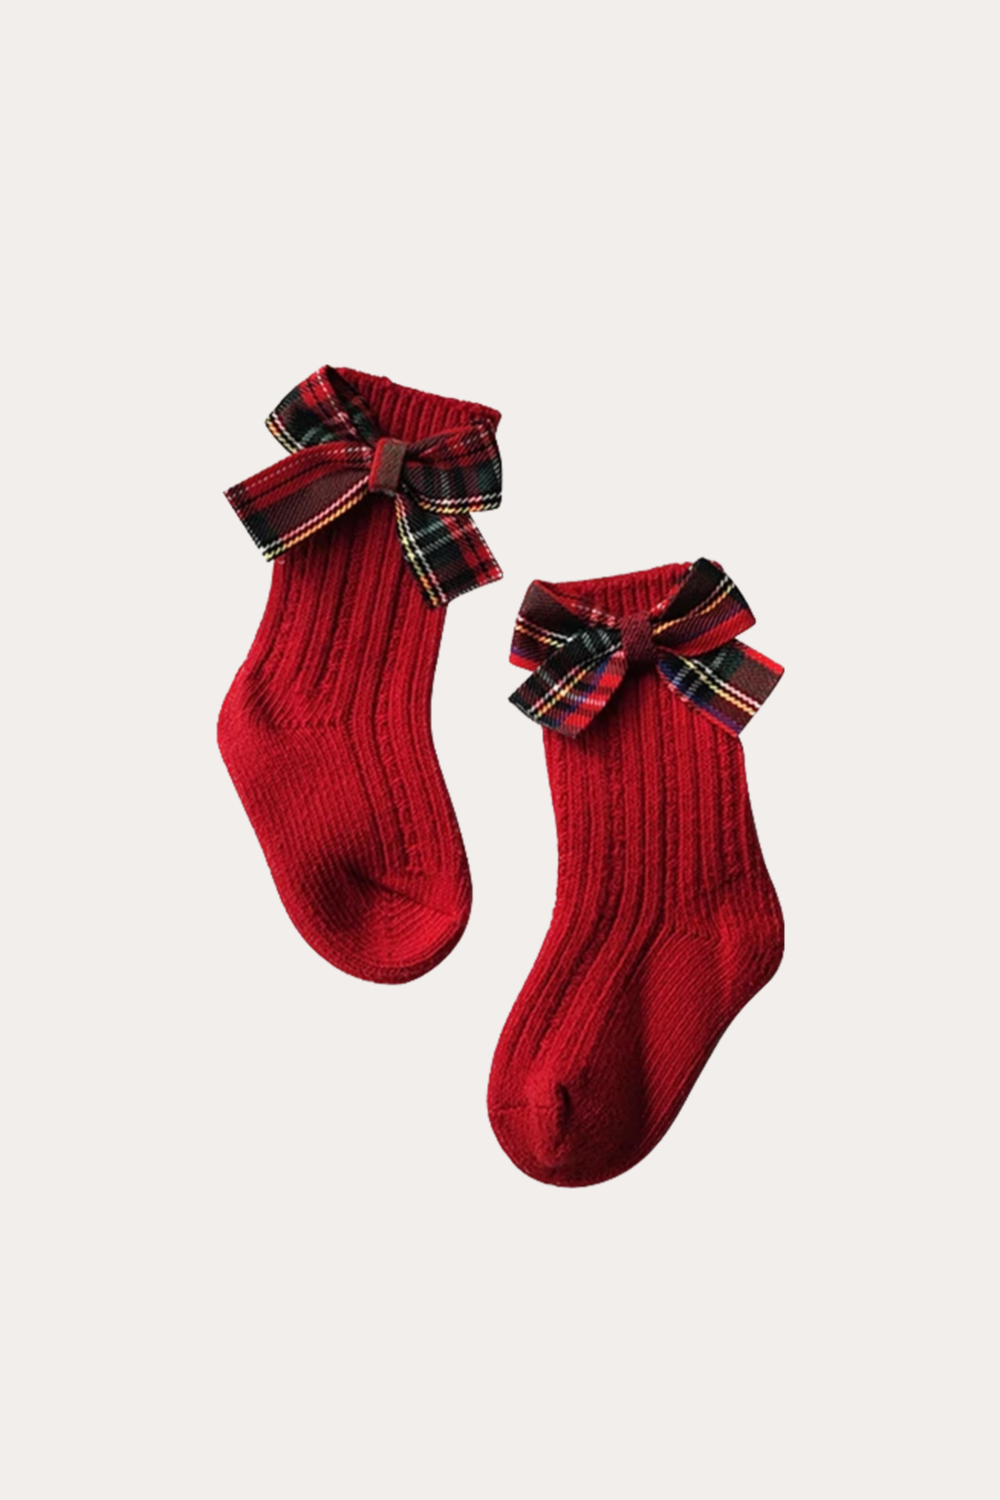 Chaussettes de Noël rouges | Noeud papillon